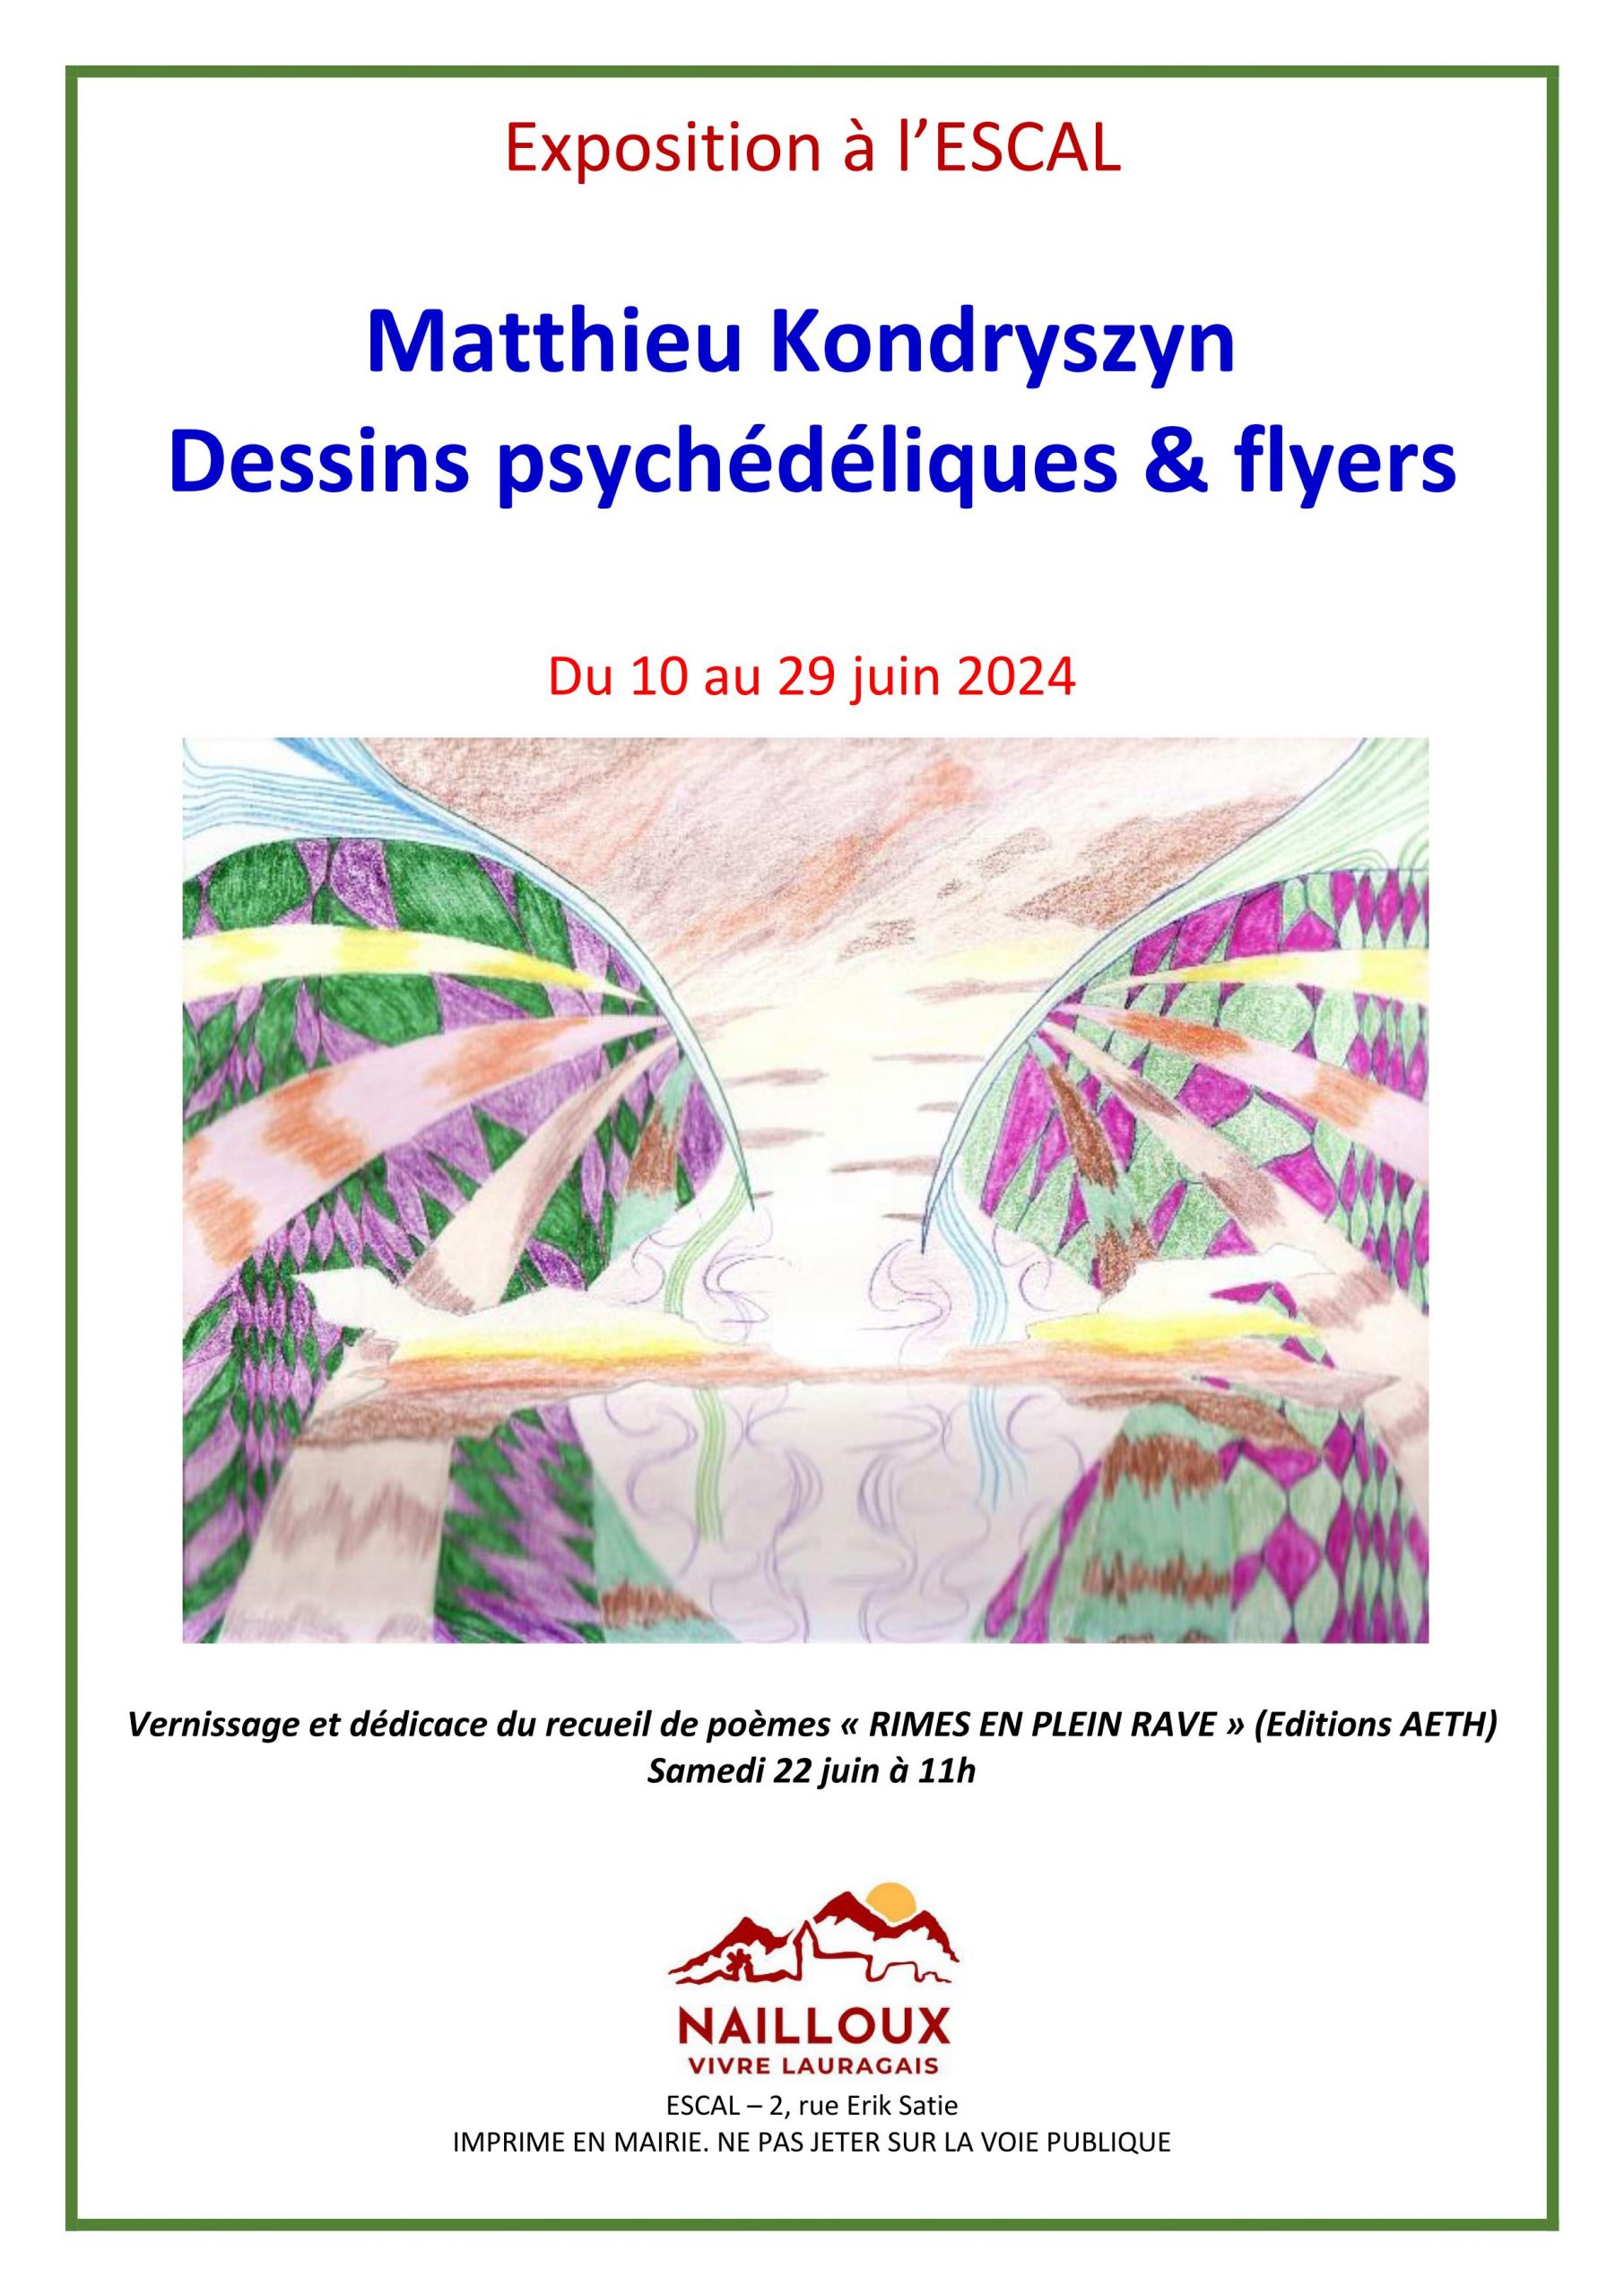 Exposition : "Dessins psychédéliques & flyers" par Matthieu Kondryszyn